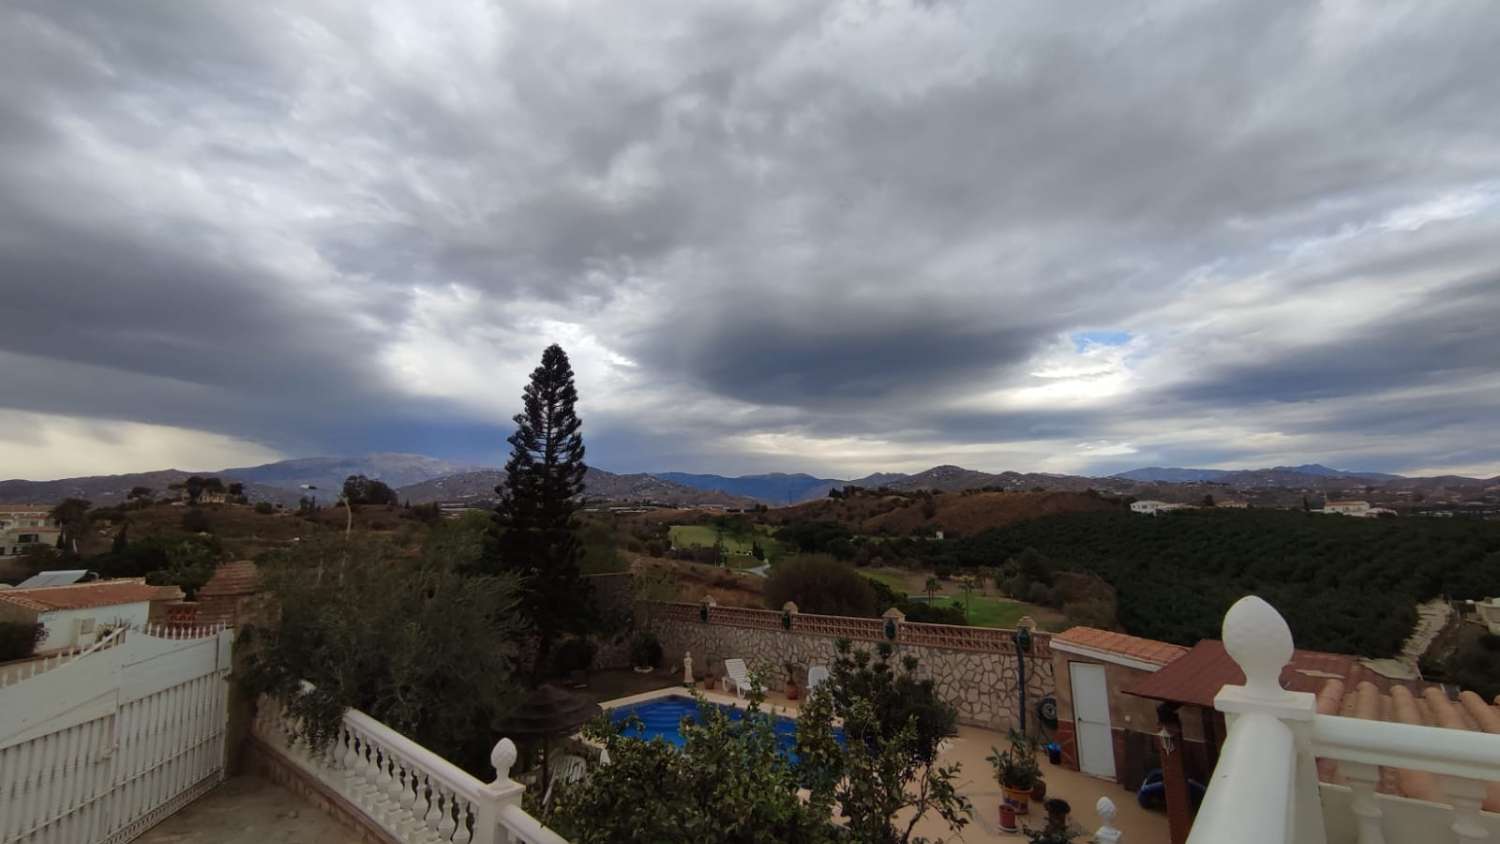 Magnificent Villa for sale in Caleta del Sol, Golf course